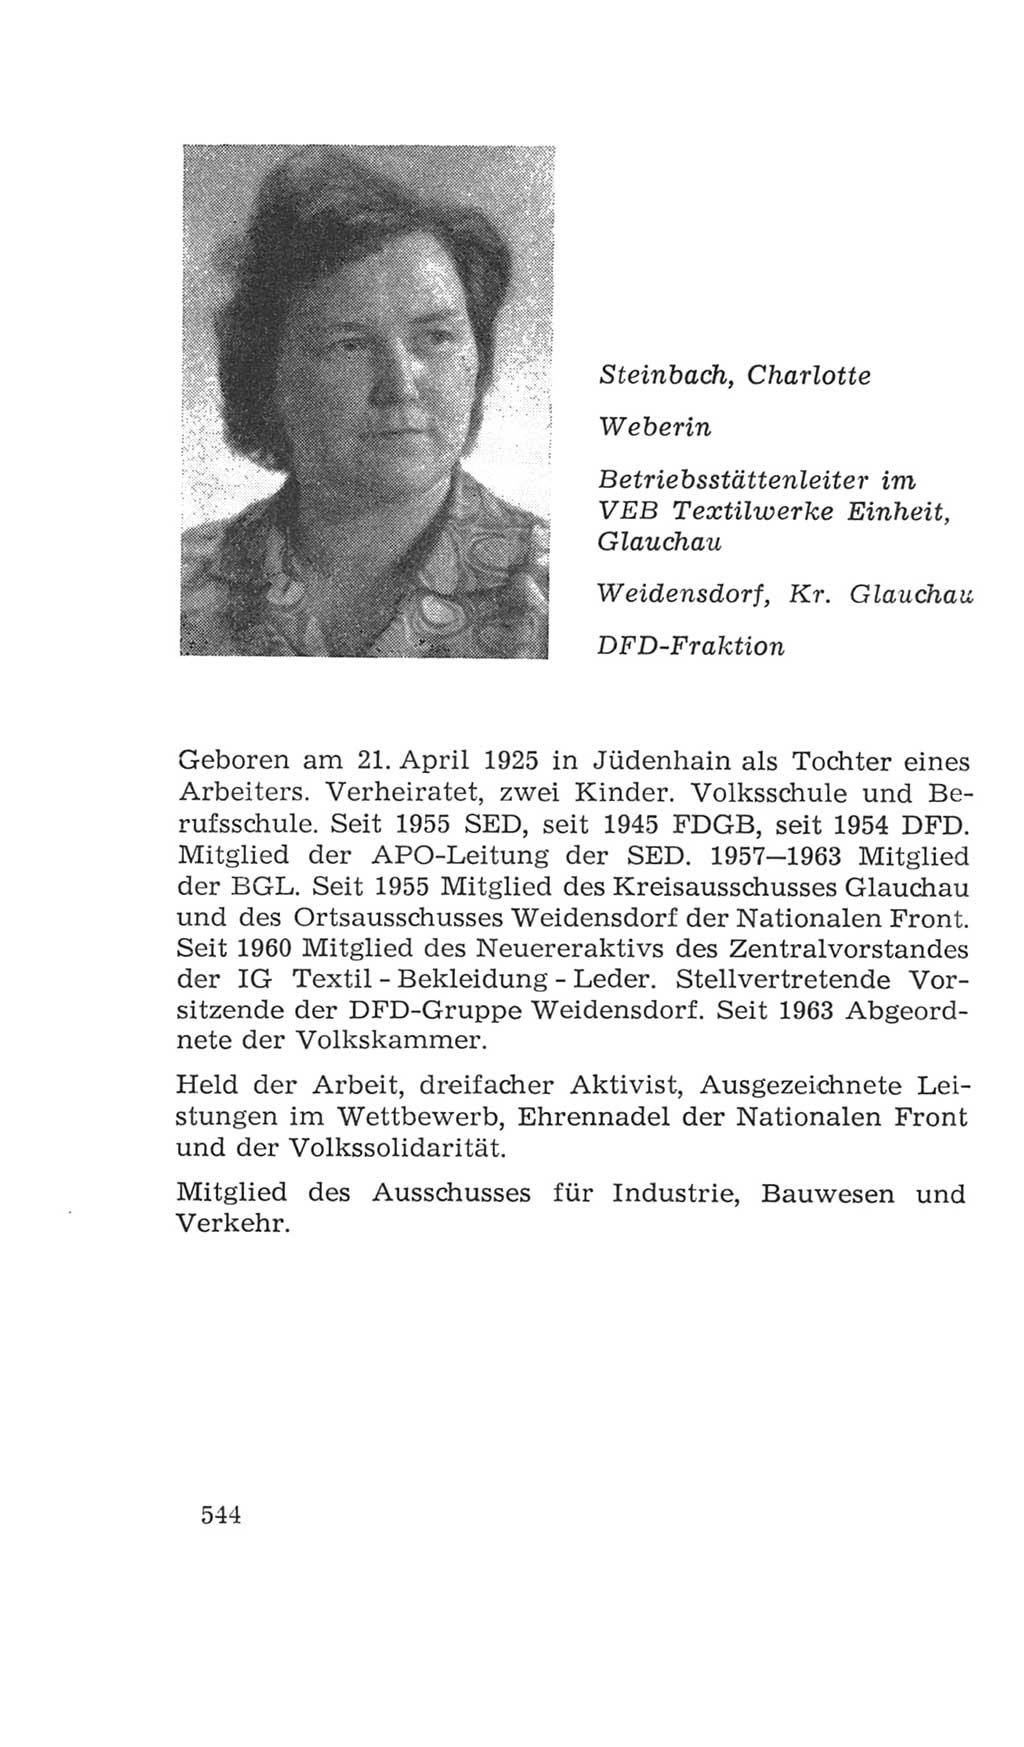 Volkskammer (VK) der Deutschen Demokratischen Republik (DDR), 4. Wahlperiode 1963-1967, Seite 544 (VK. DDR 4. WP. 1963-1967, S. 544)